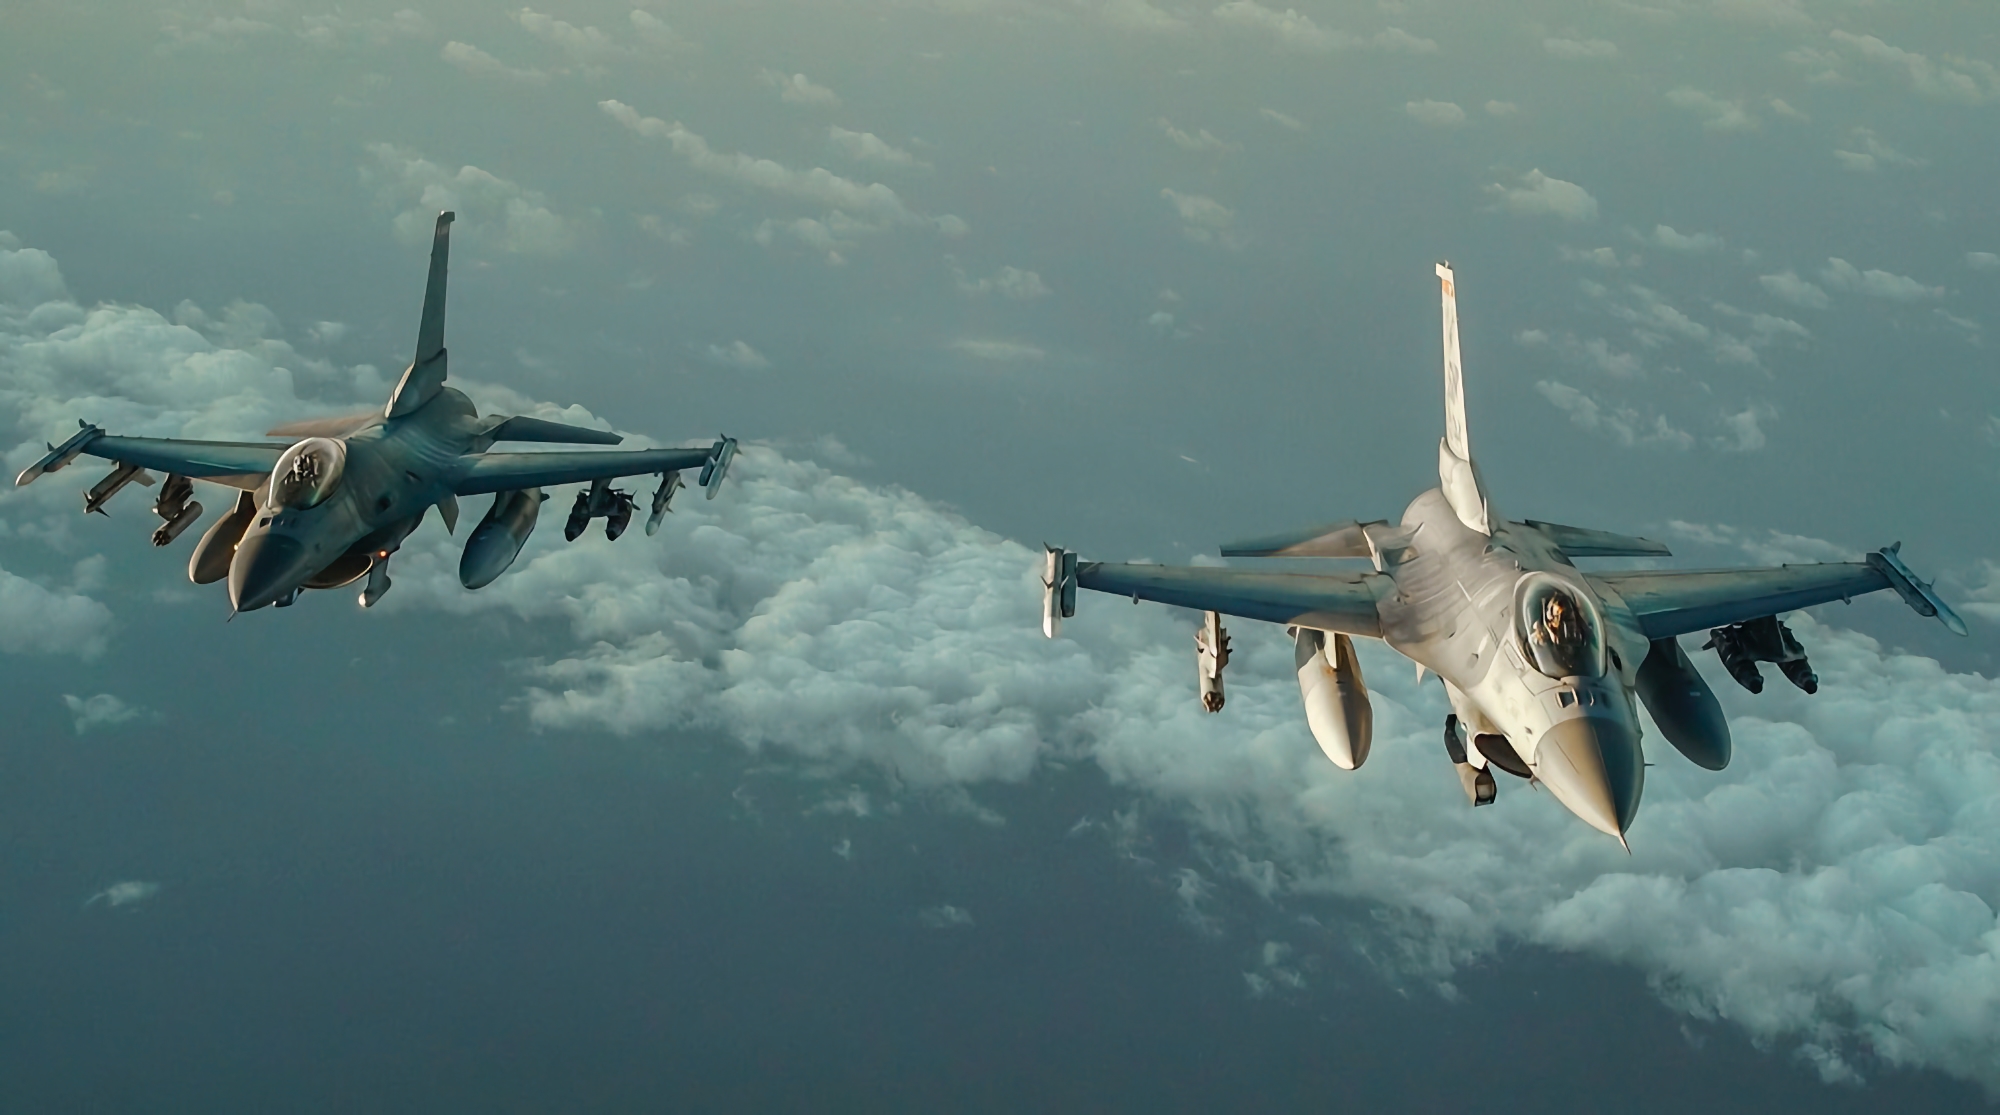 Großbritannien startet im Sommer Ausbildungsprogramm für ukrainische Piloten auf F-16 Fighting Falcon-Kampfflugzeugen